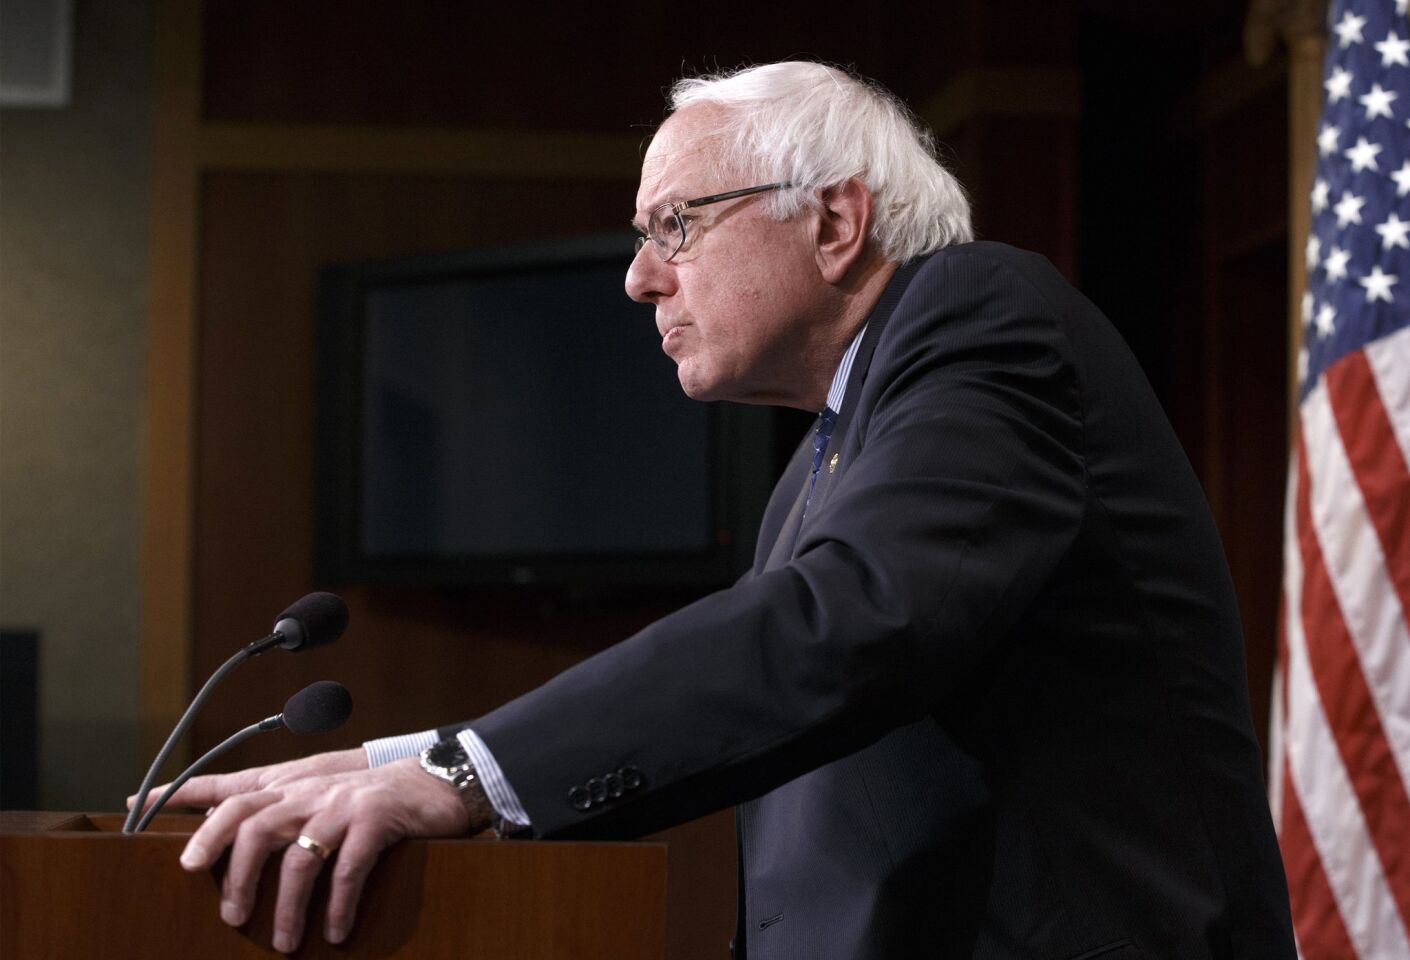 Bernie Sanders weighs run for president